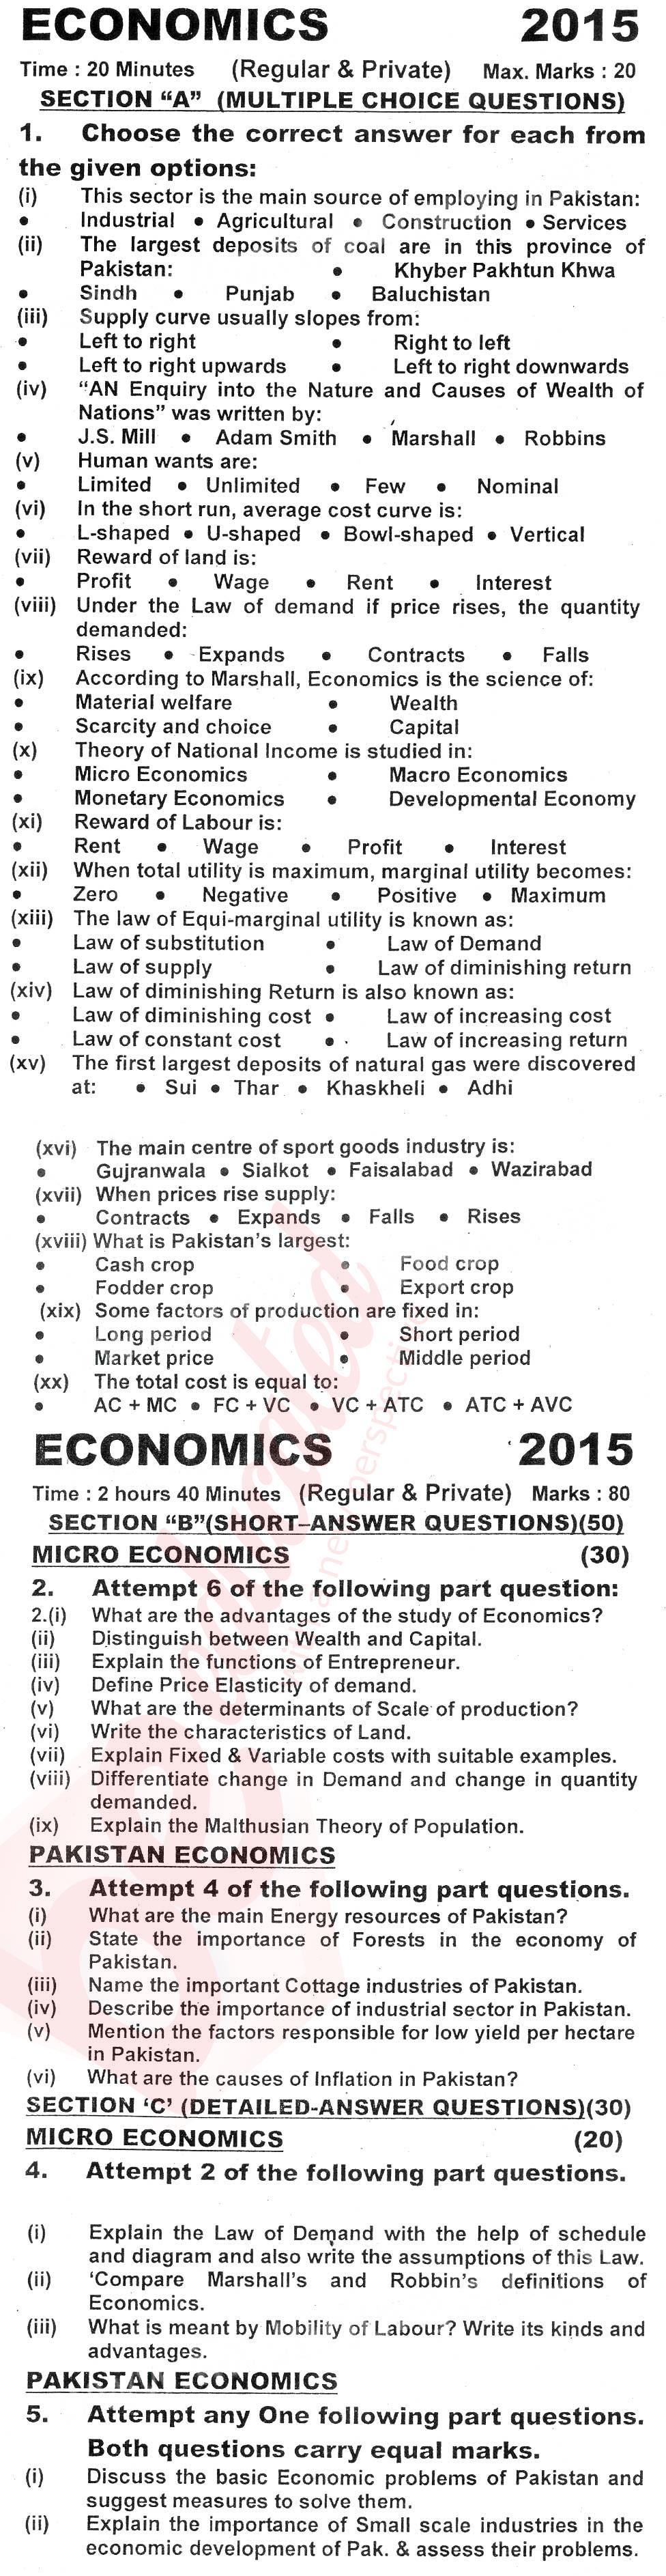 Economics FA Part 1 Past Paper Group 1 KPBTE 2015